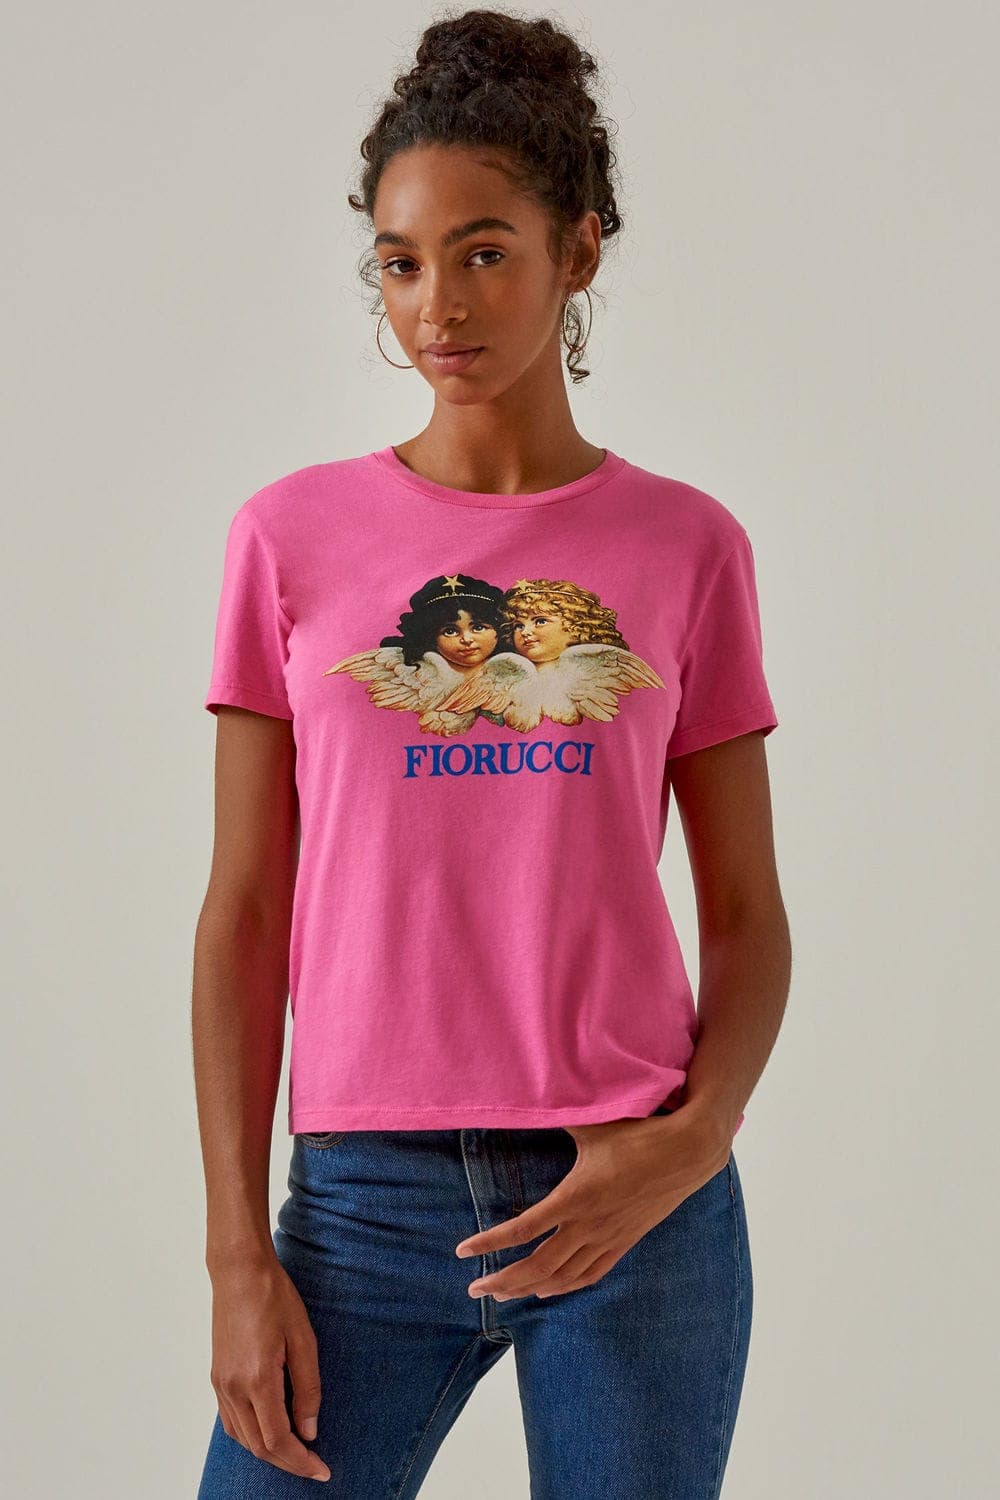 T-shirt synonym is Fiorucci | Acrimonia